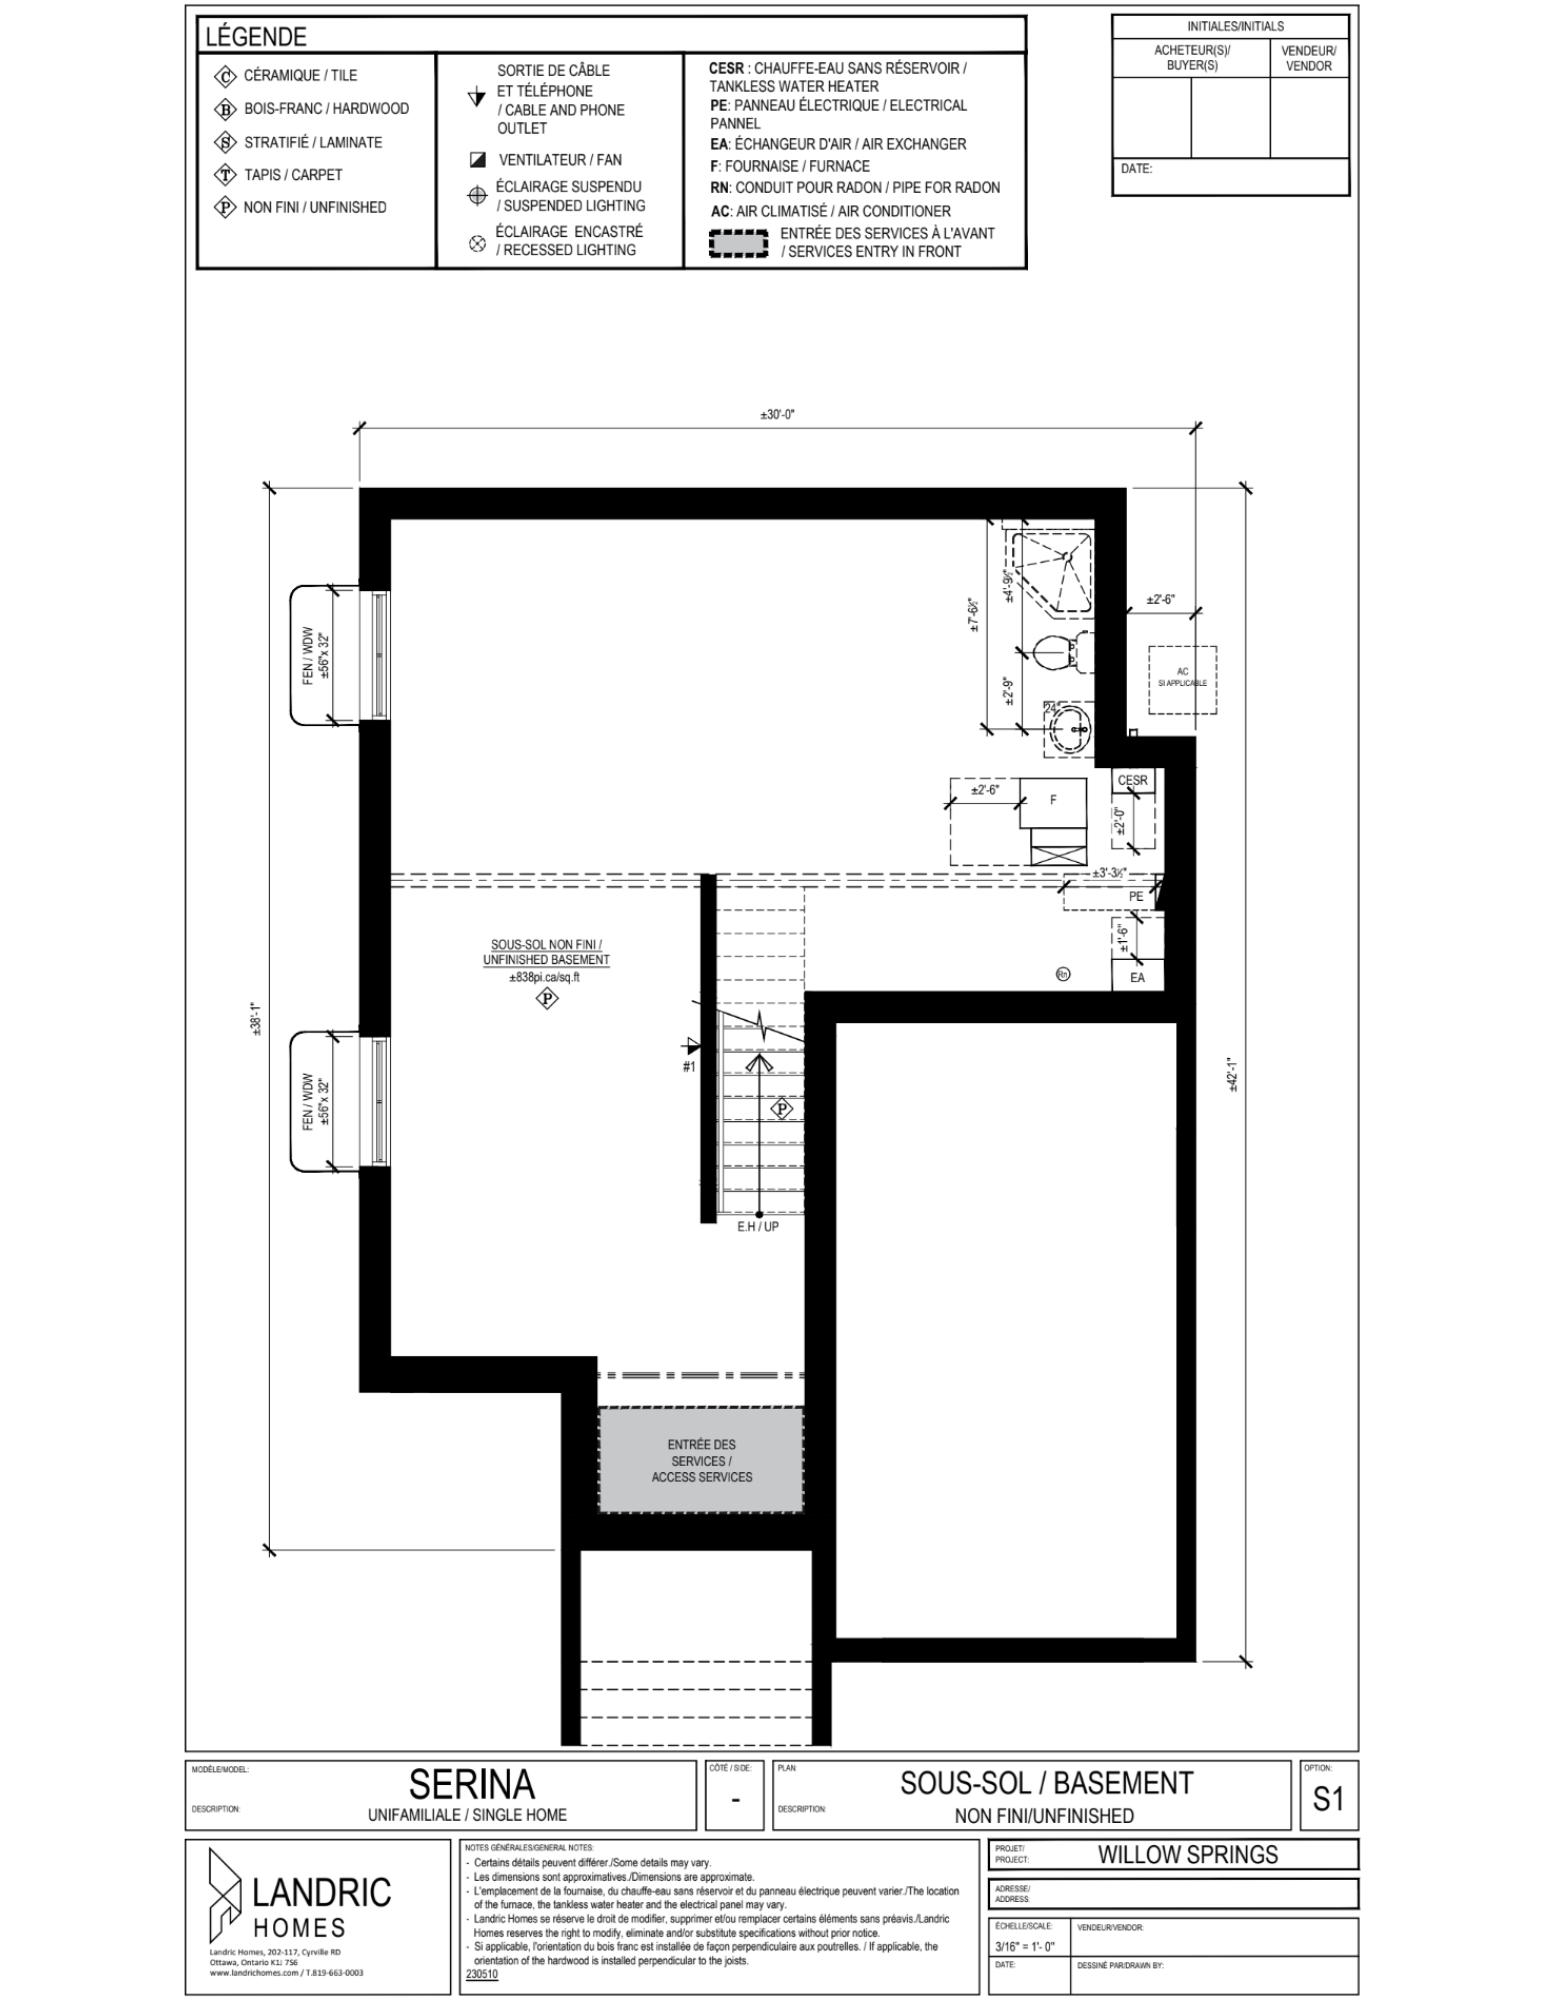 Willow Springs, Limoges floor plans (28)